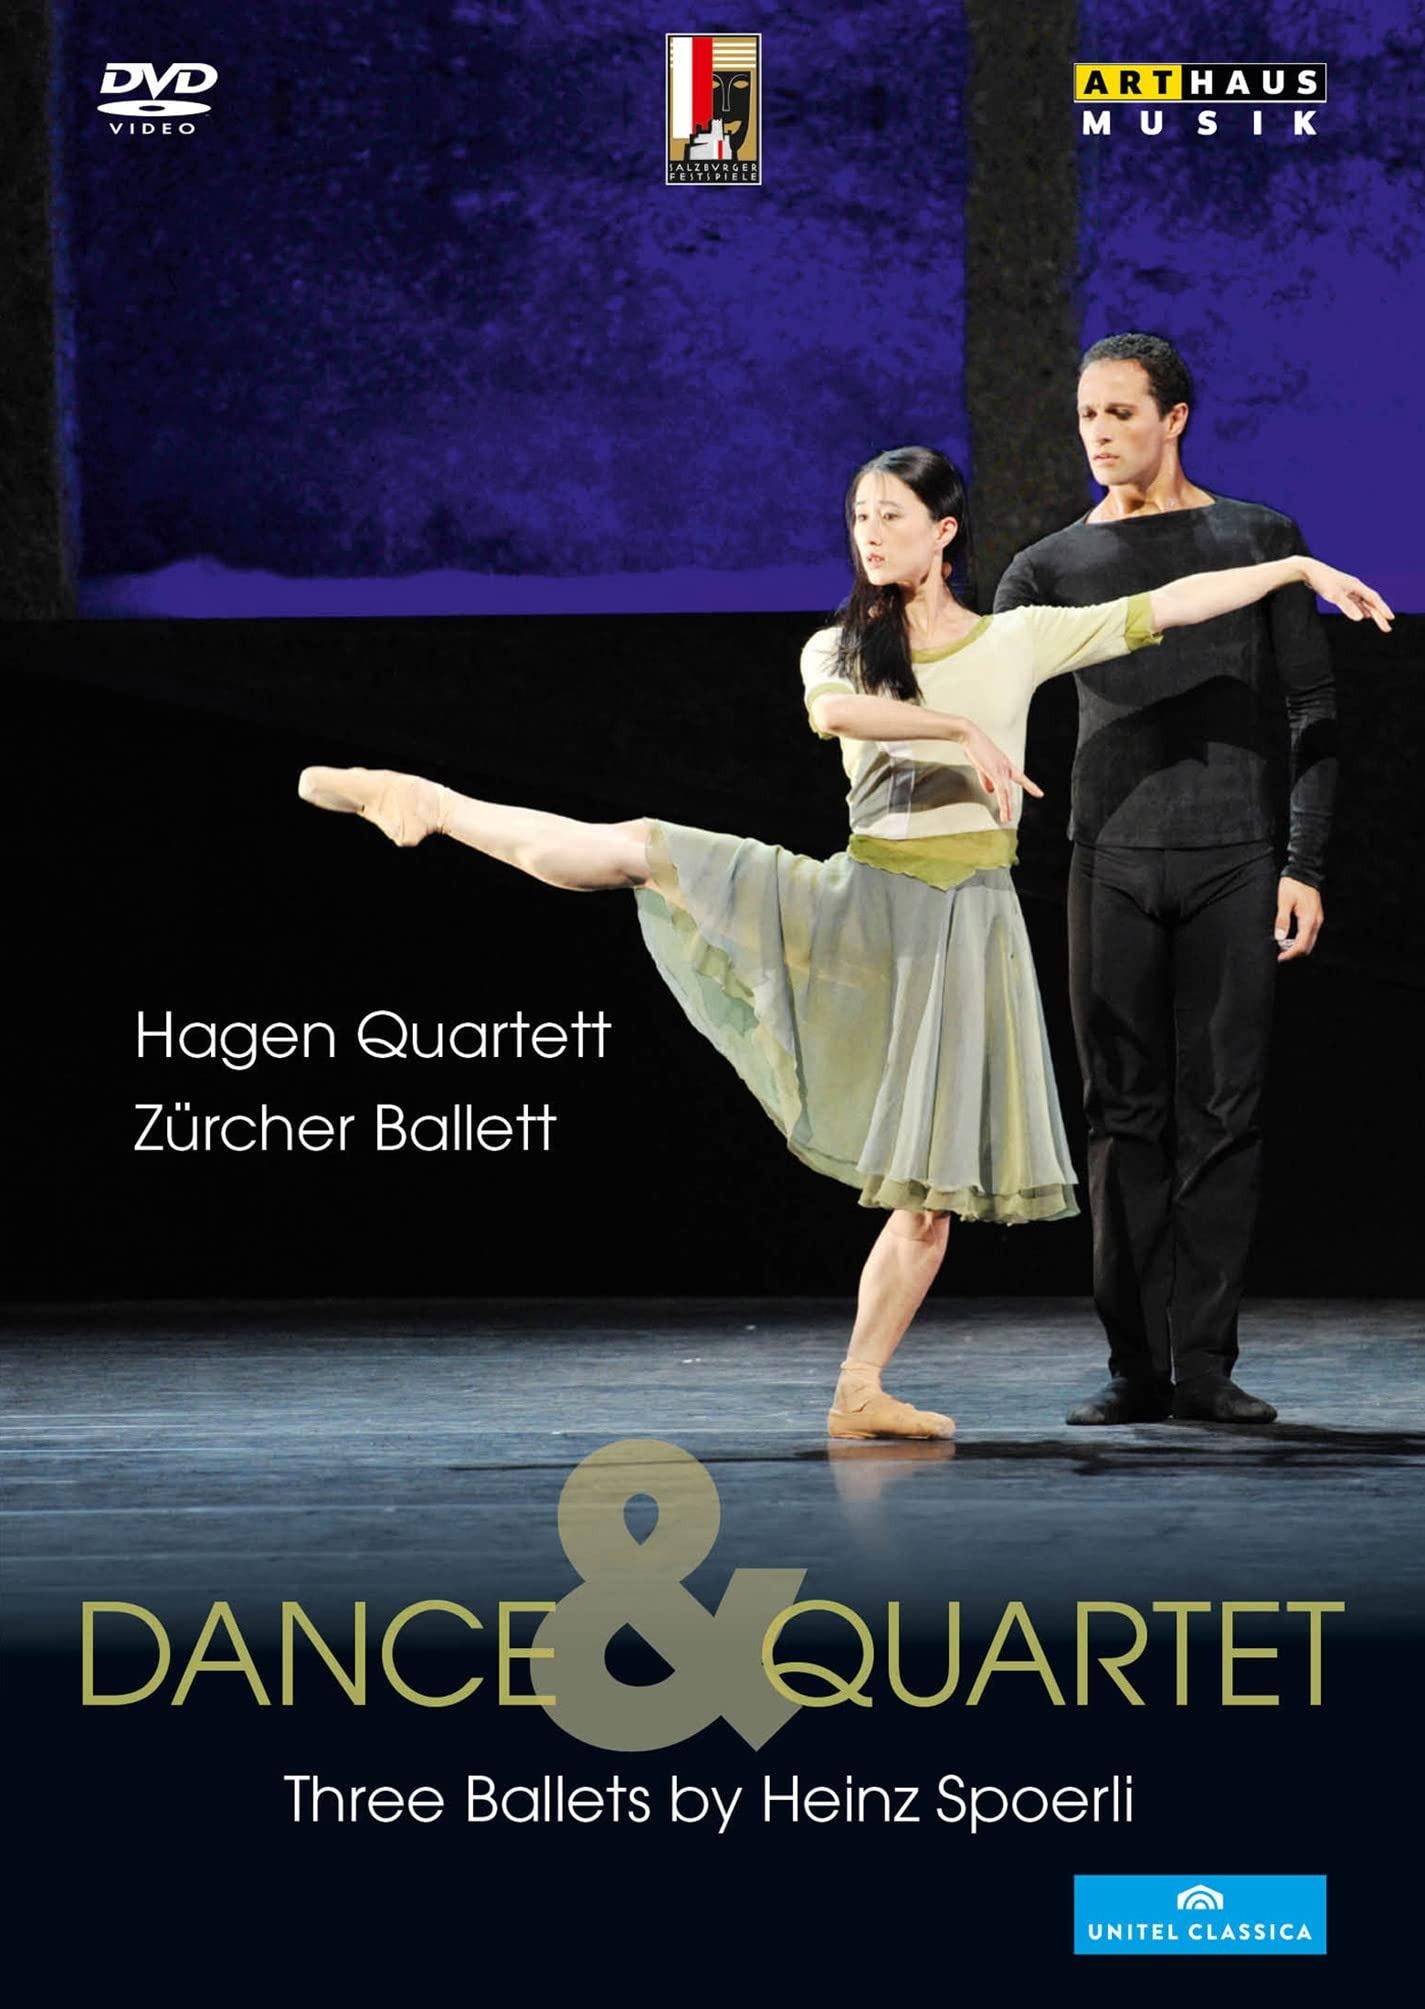 Hagen Quartett - Dance & Quartet (Drei Ballette von Heinz Spoerli)